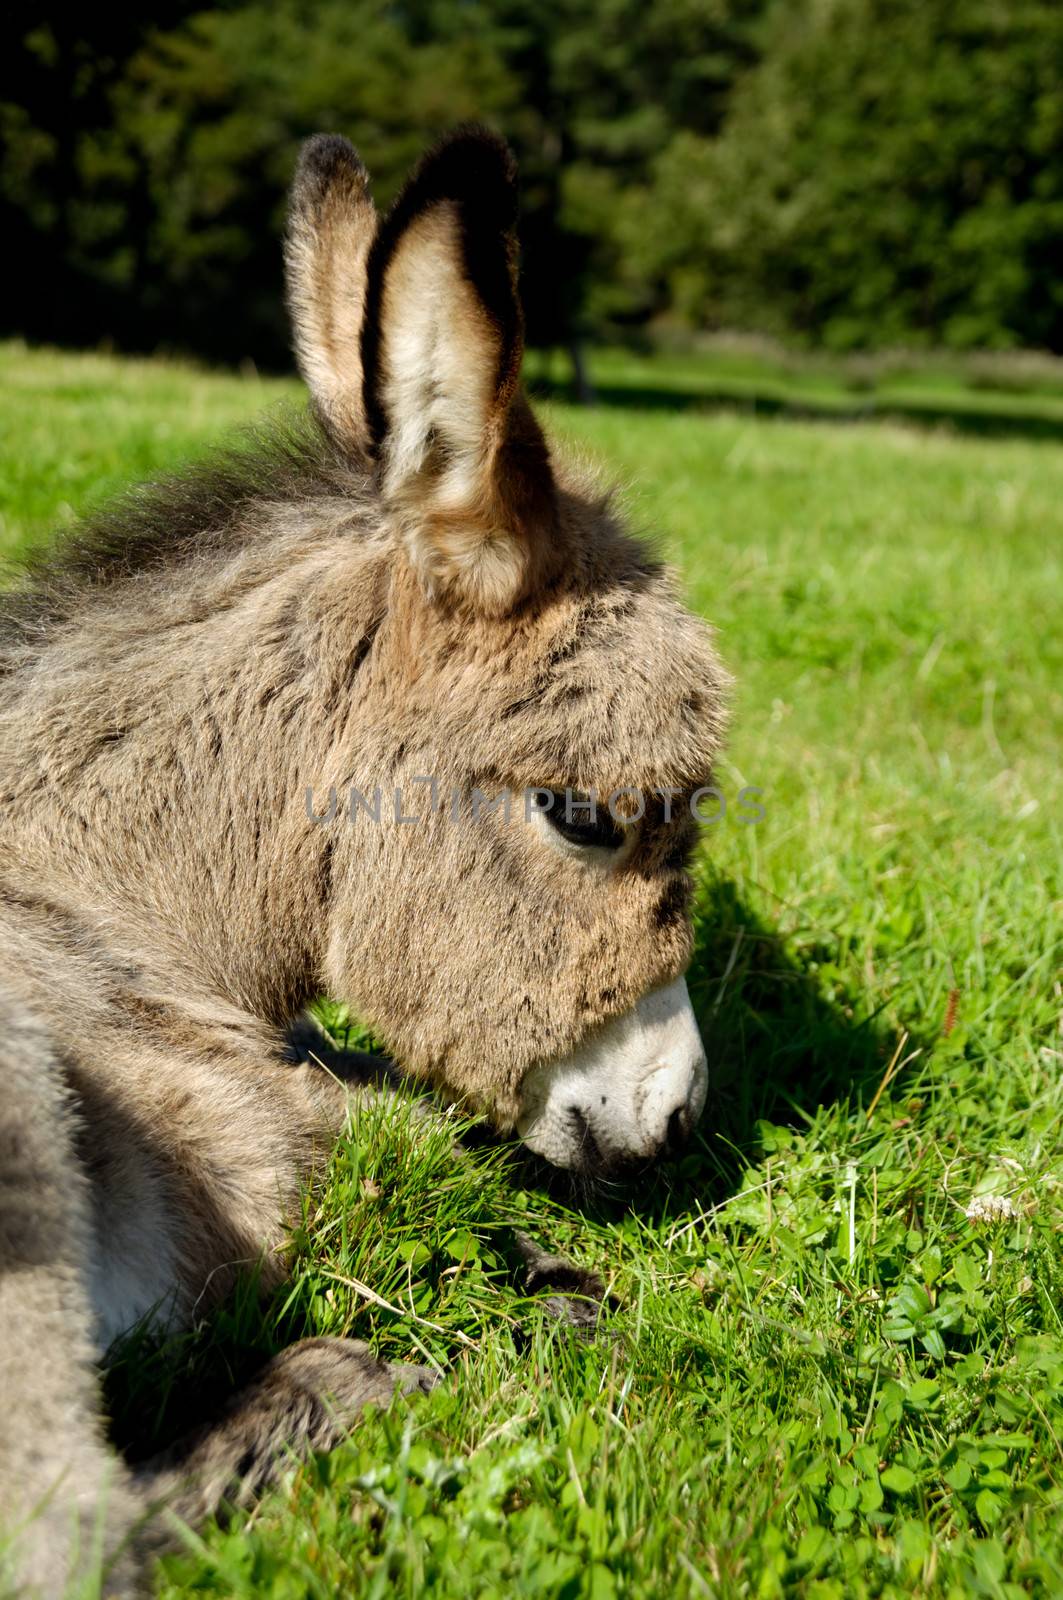 Sad donkey by cfoto